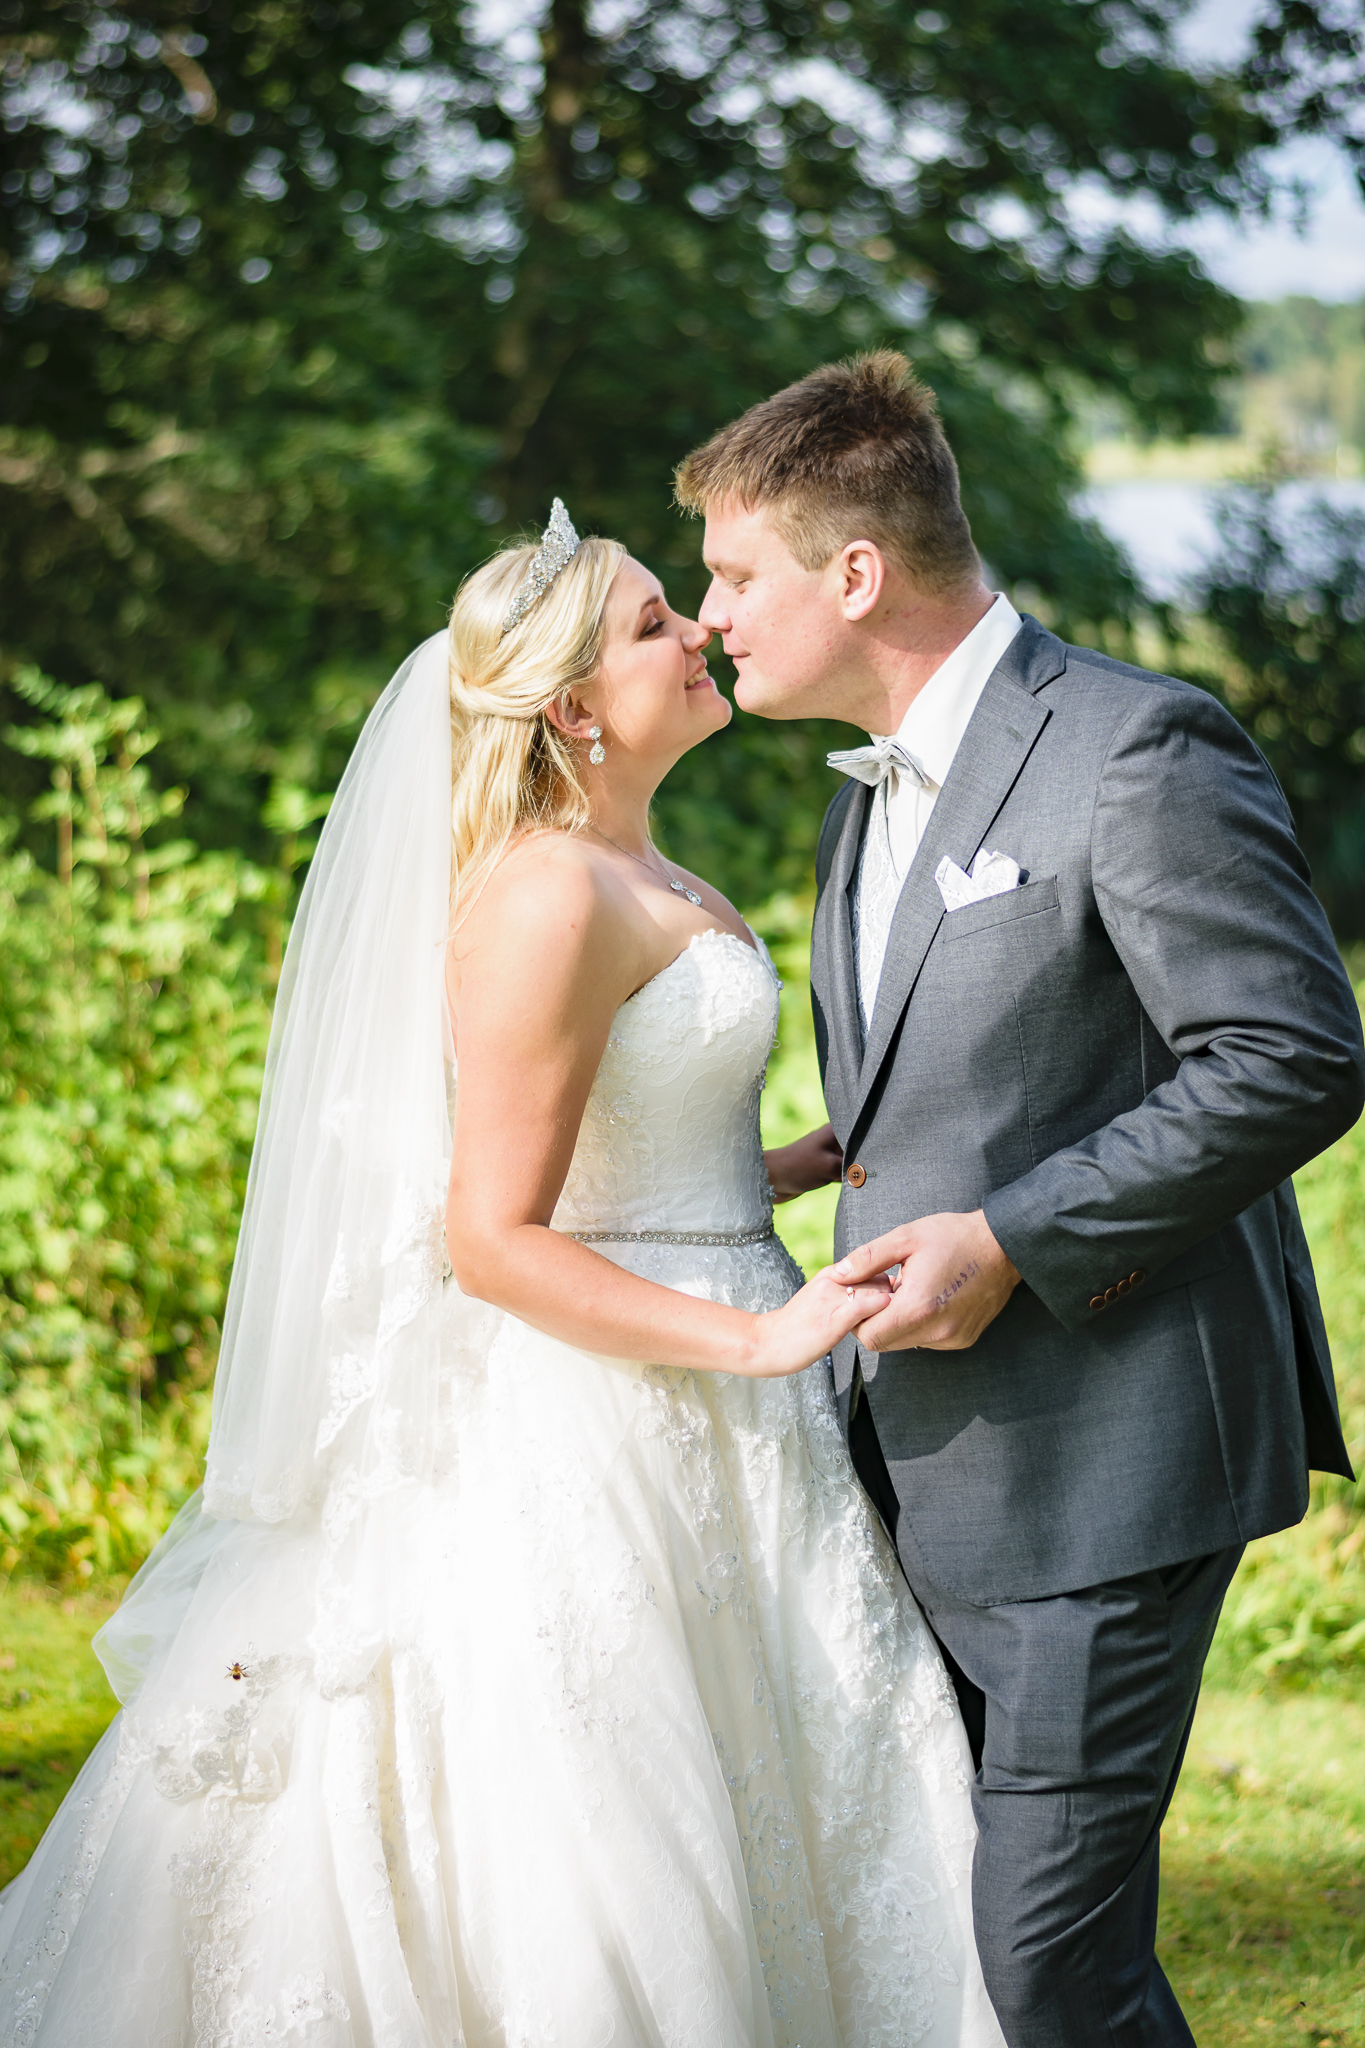 Brud i brudklänning från Demetrios från Proms and weddings i Malmö, kysser brudgum i kostym från Dreamwear Bridal i Ljungby